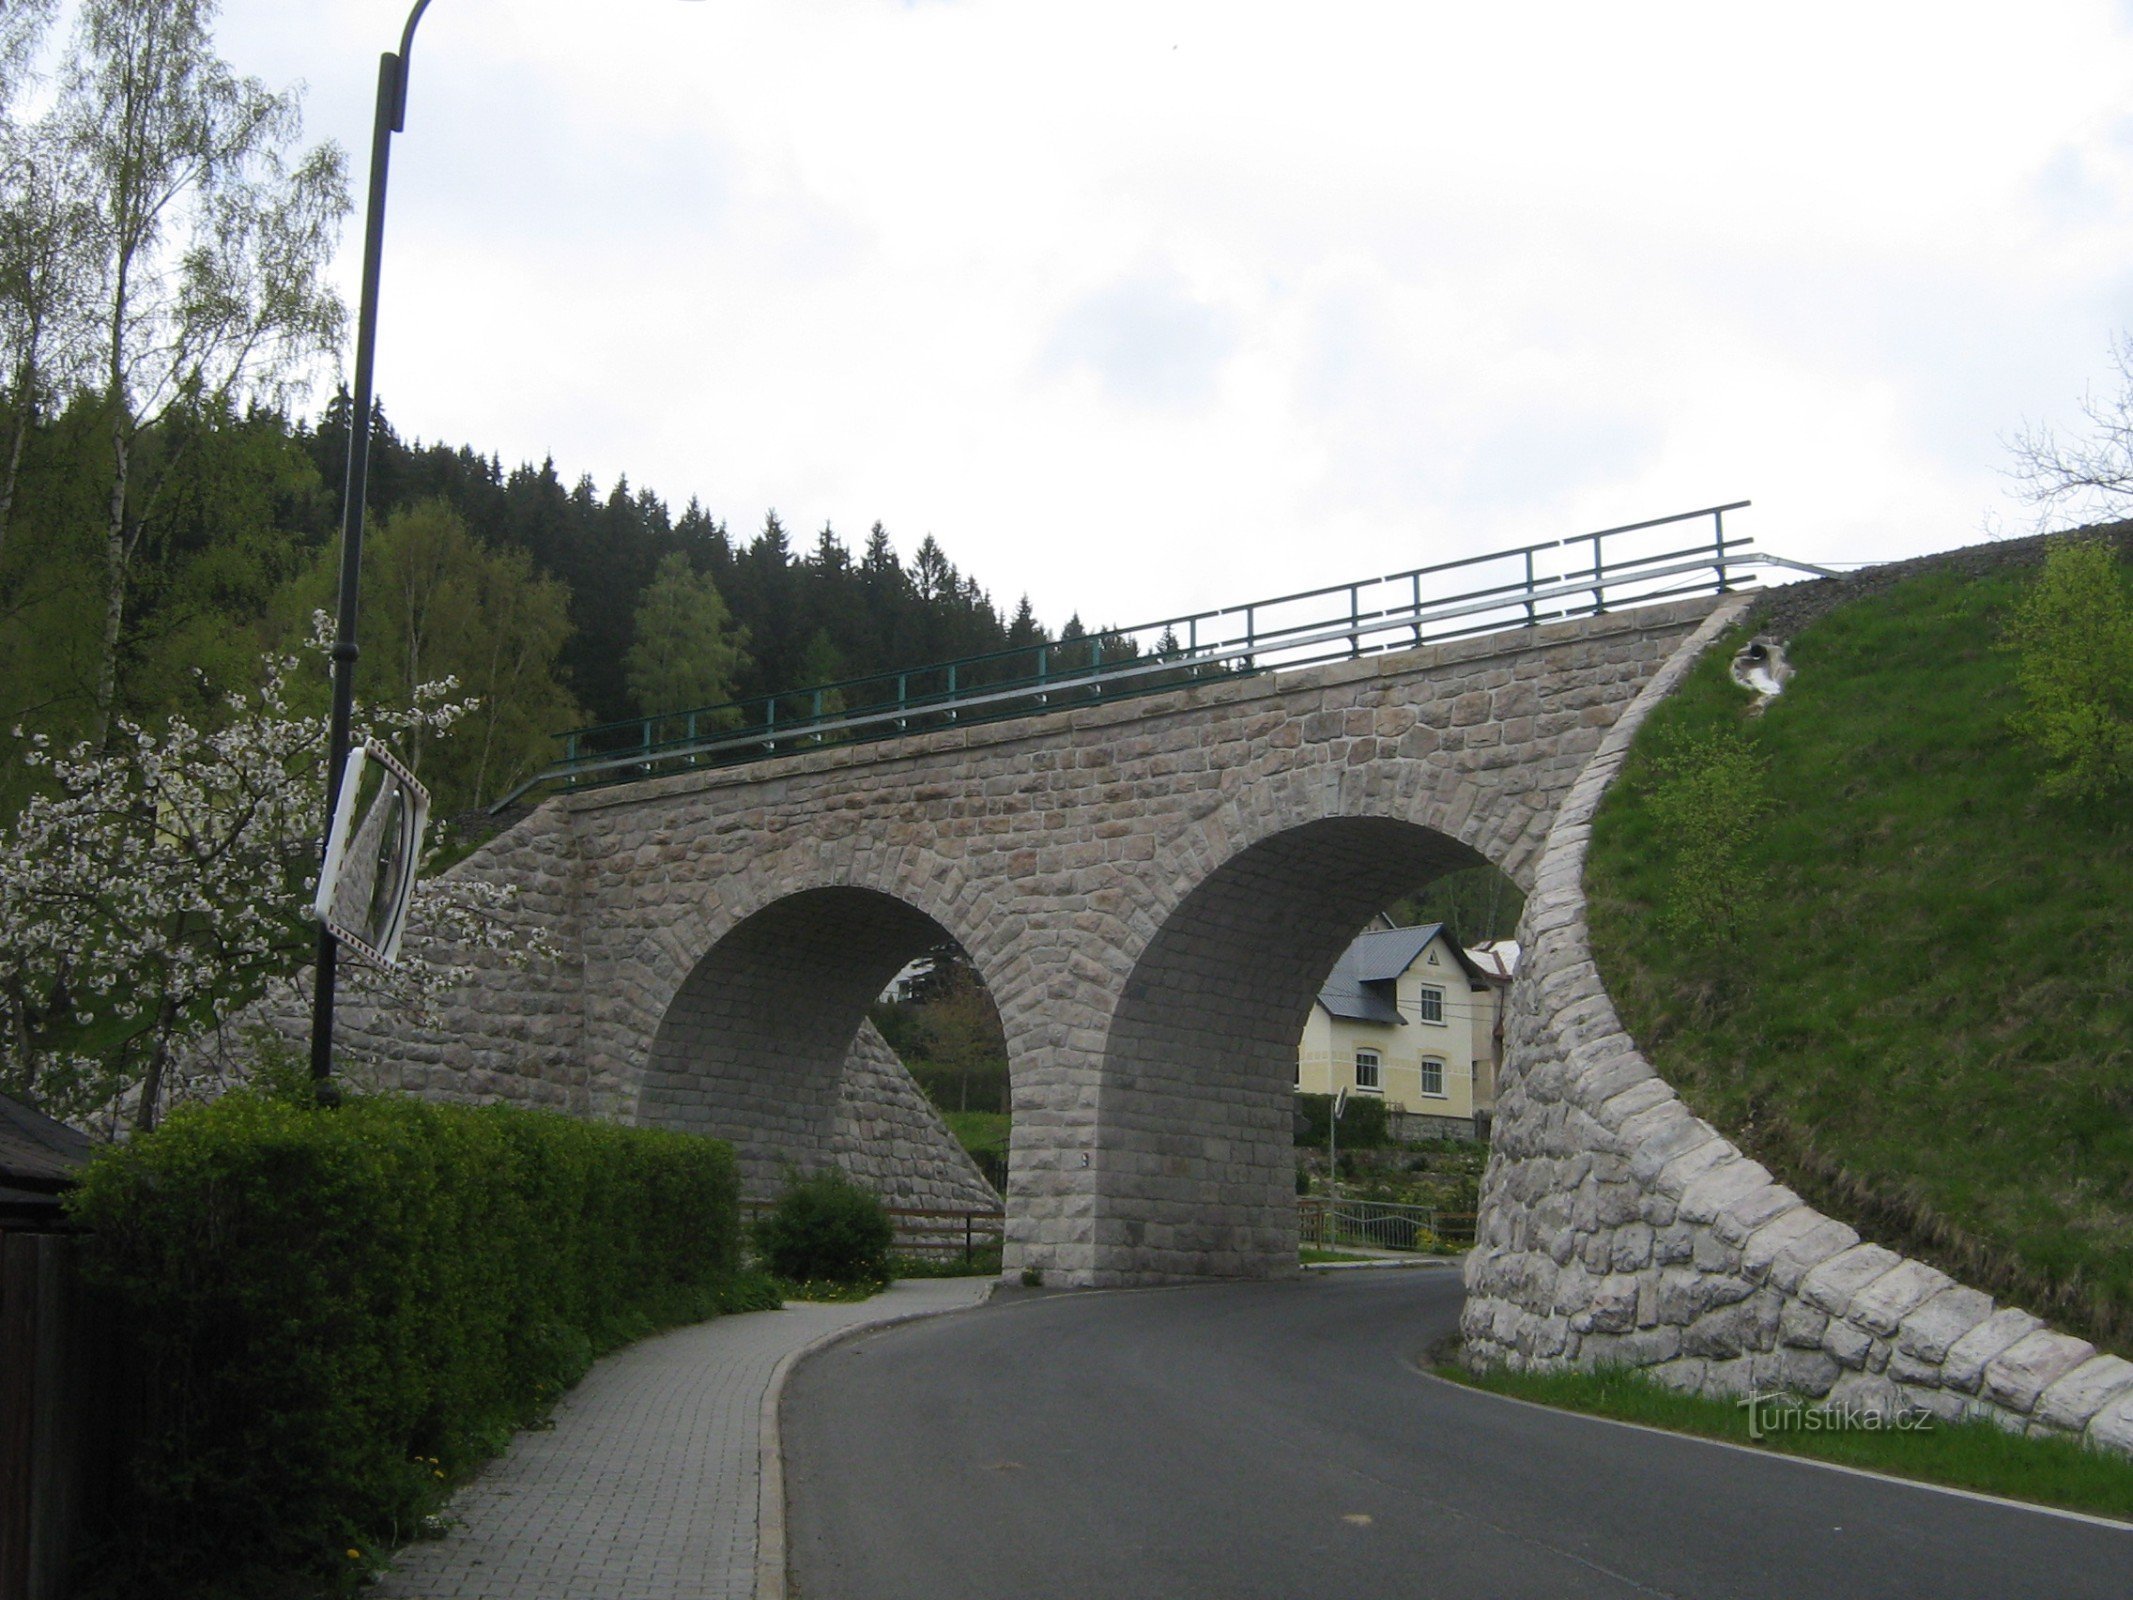 Sub viaduct